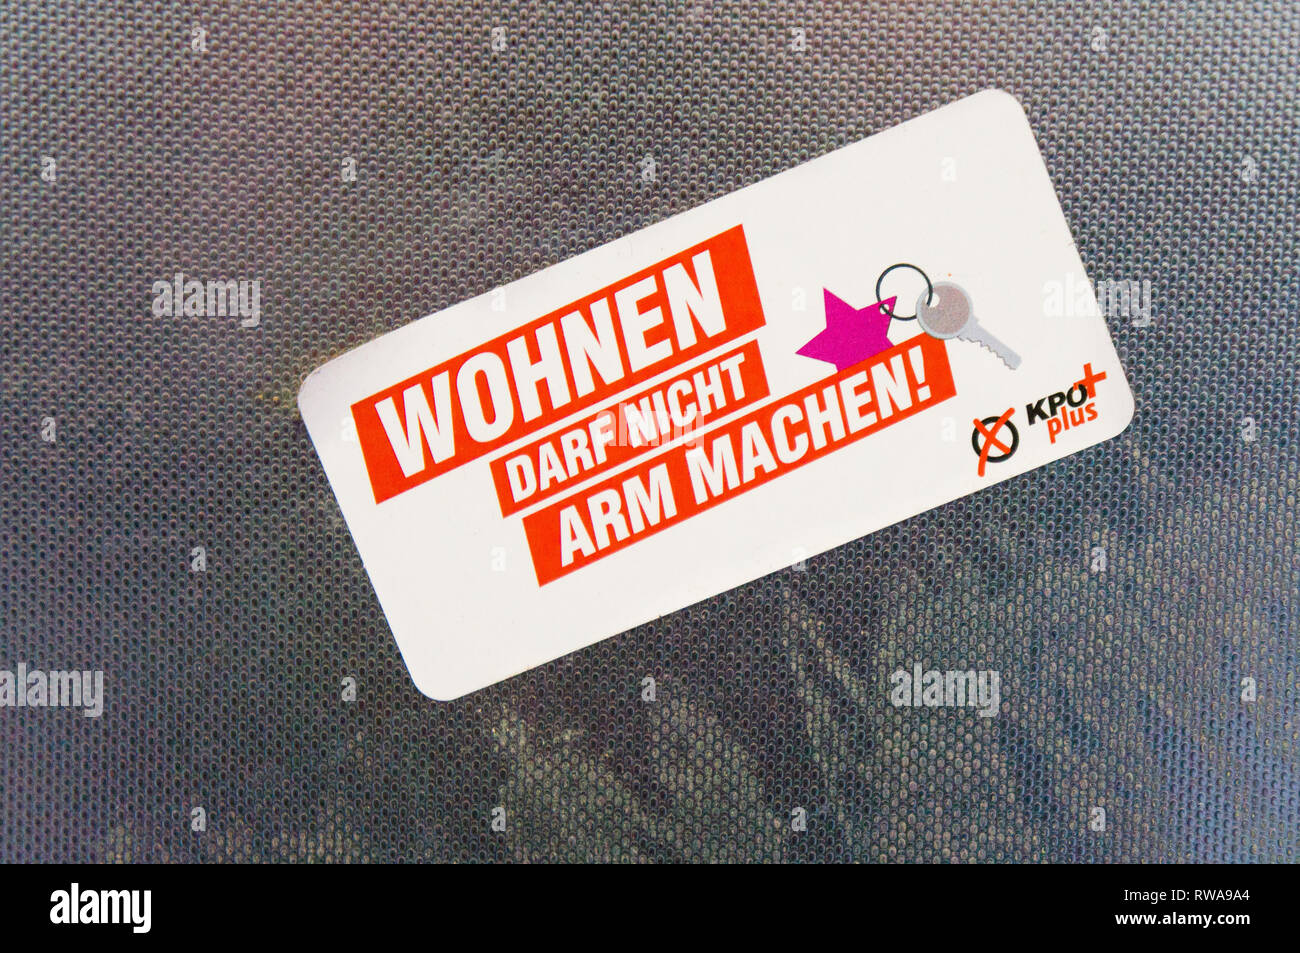 Le WOHNEN DARF NICHT ARM MACHEN!, sticker, KPO plus (KPO+), alliance électorale entre le Parti communiste autrichien et les jeunes Verts, à Vienne Banque D'Images